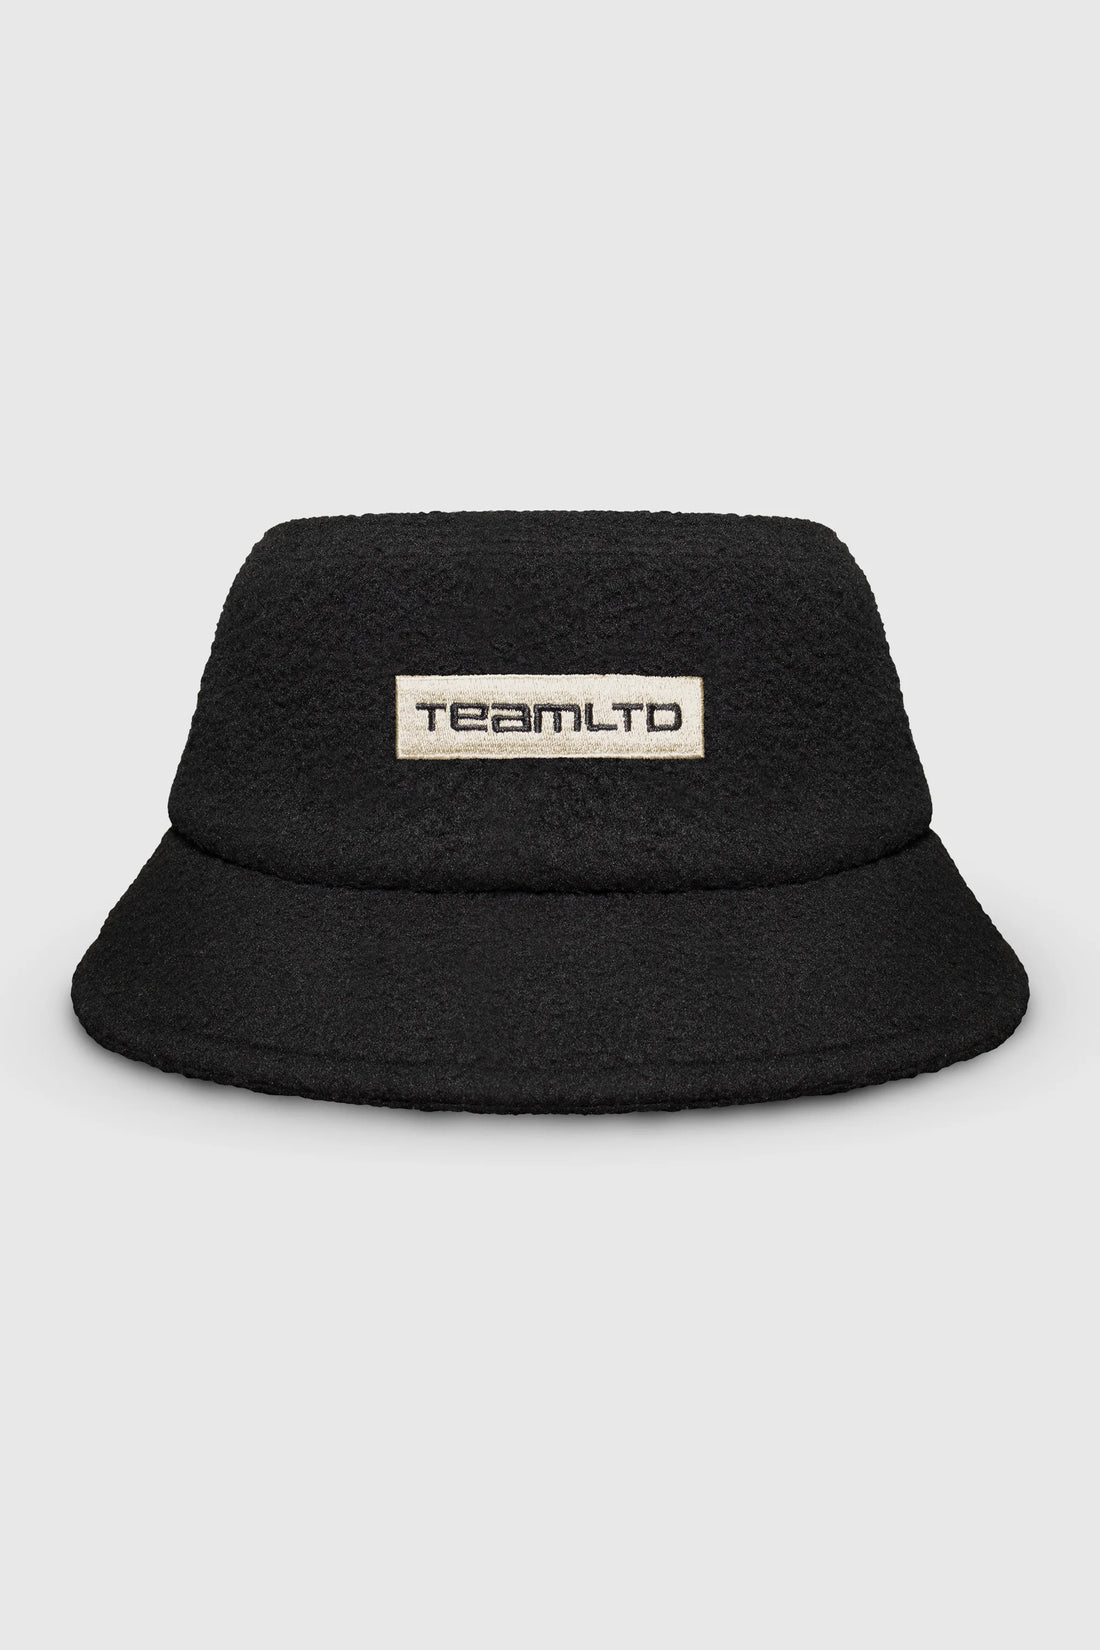 TeamLTD Sherpa Bucket Hat